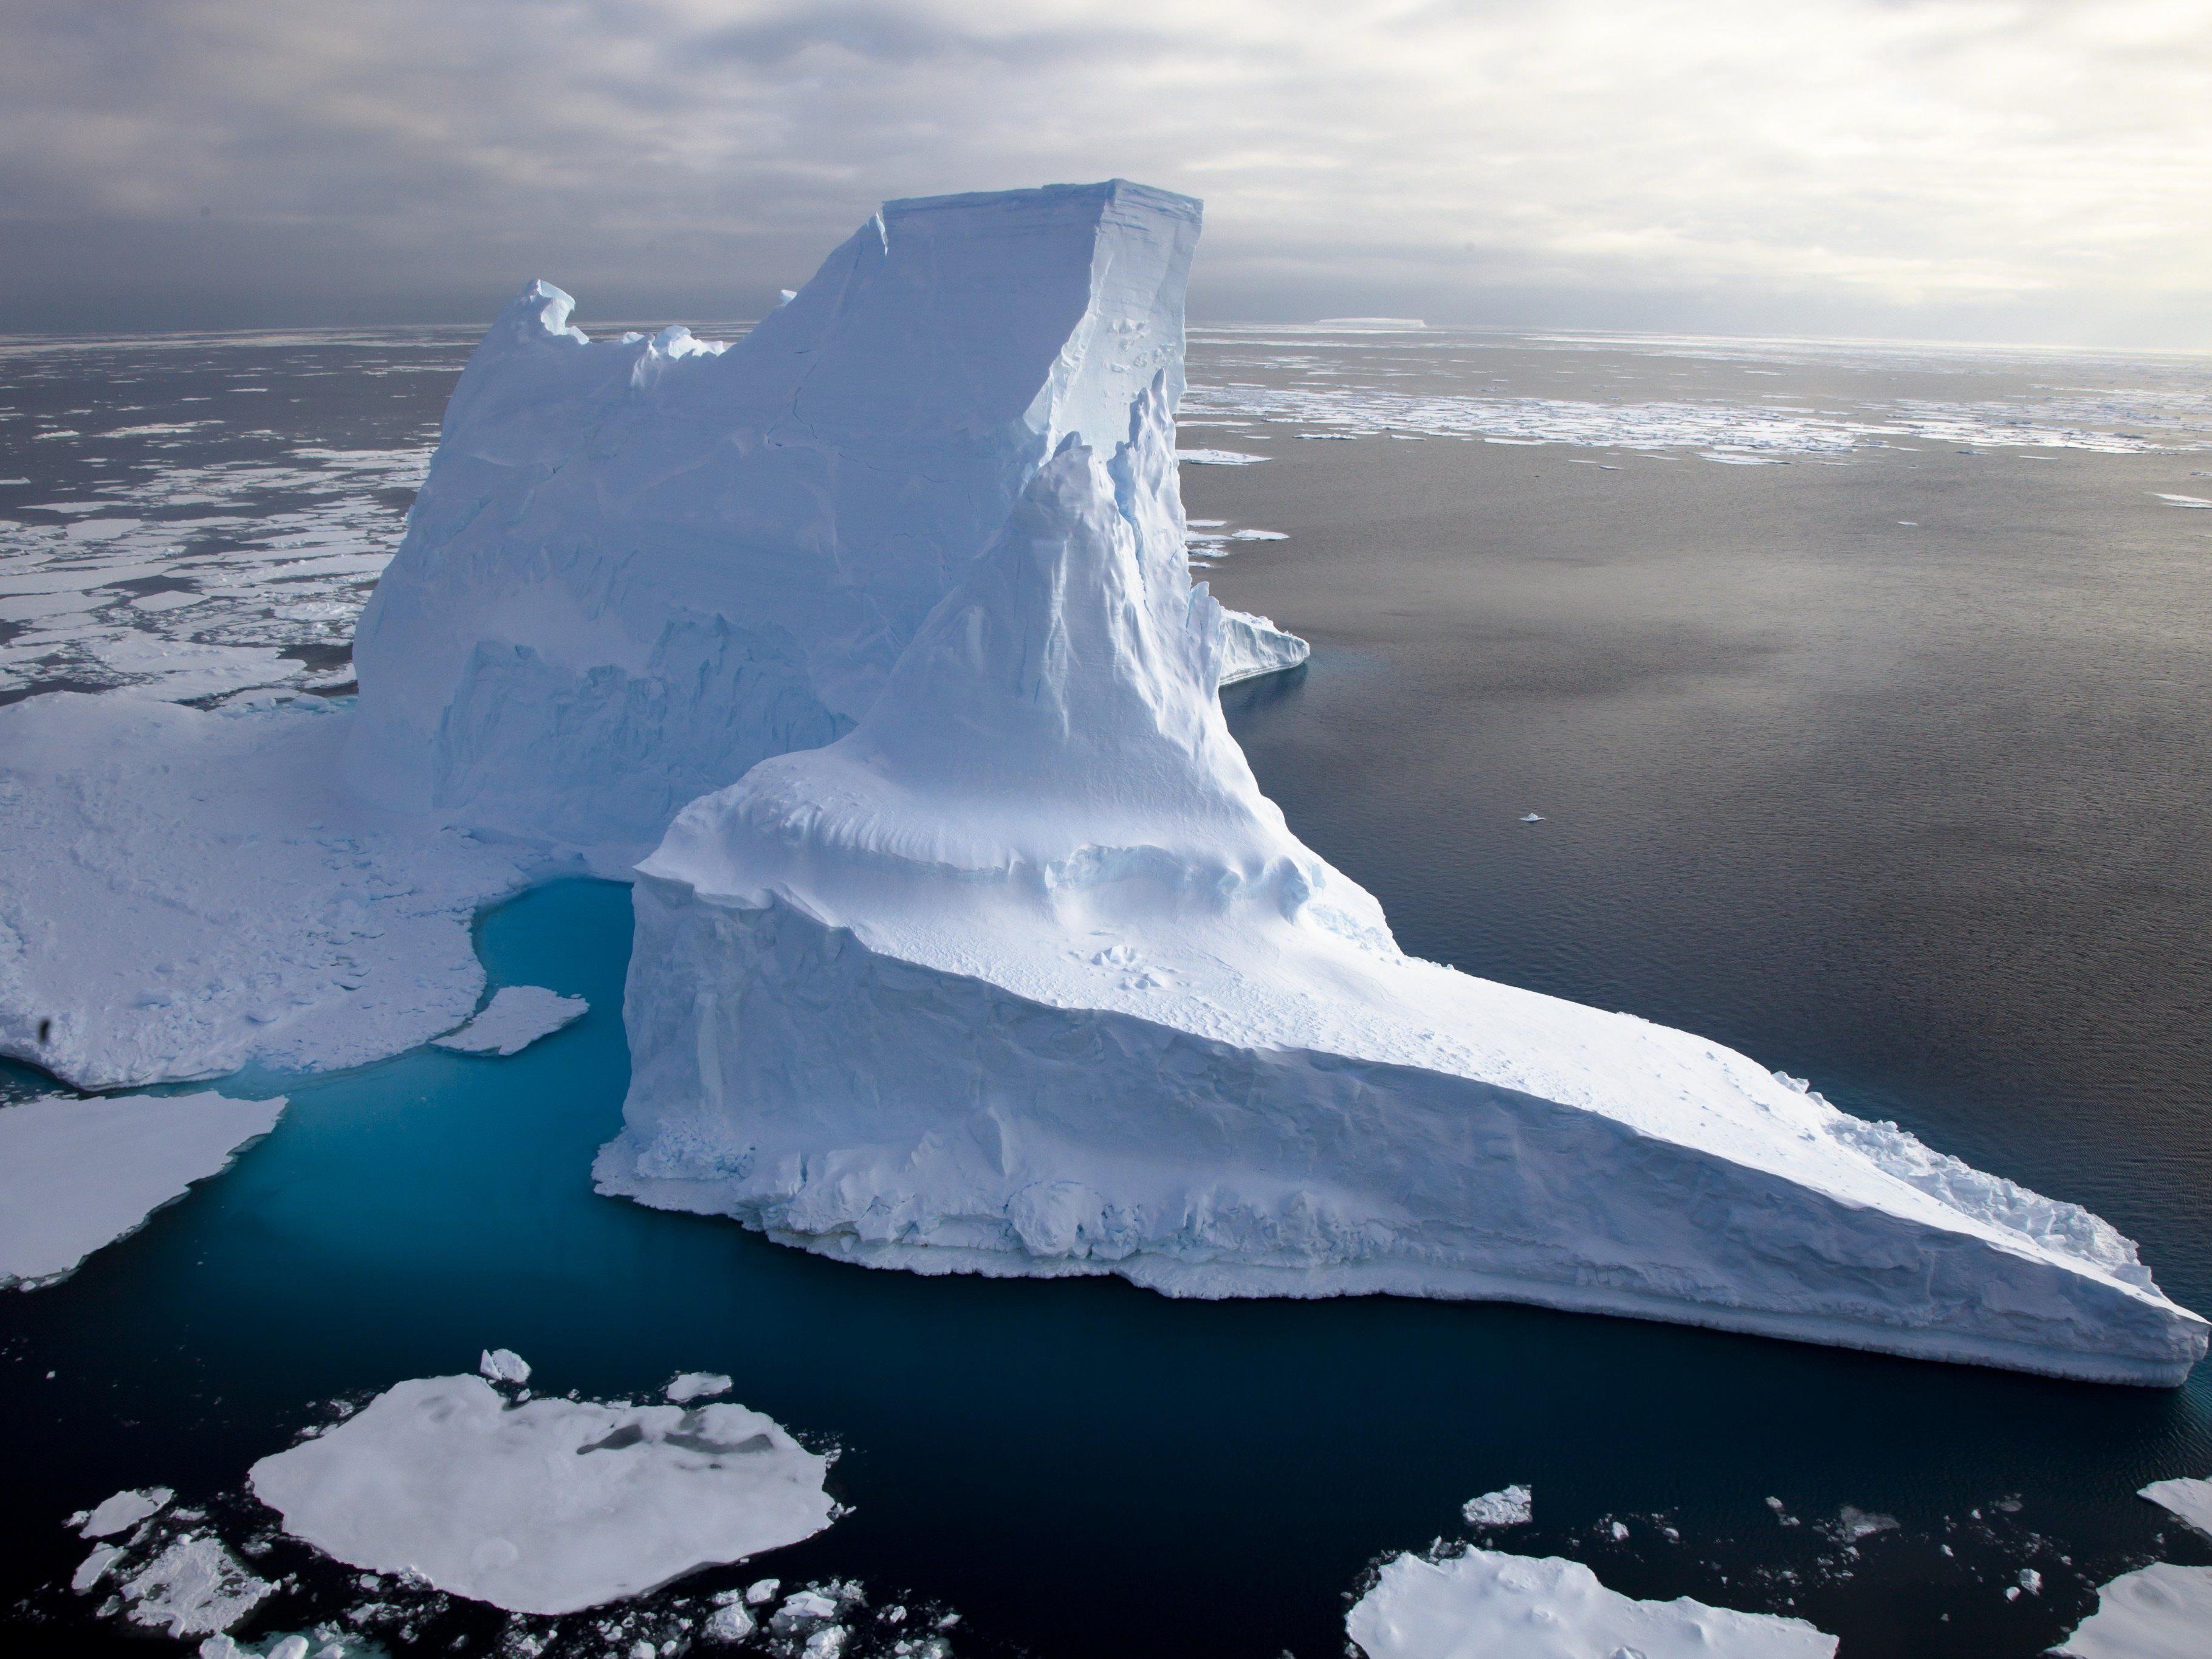 Heutzutage treiben die größten Eisberge in antarktischen Gewässern. Sie reichen bis in eine Wassertiefe von maximal 700 Meter und sind damit deutlich kleiner als jene Eisberge, welche die Kratzspuren auf dem Hovgaard Rücken in der Framstraße hinterlassen haben.